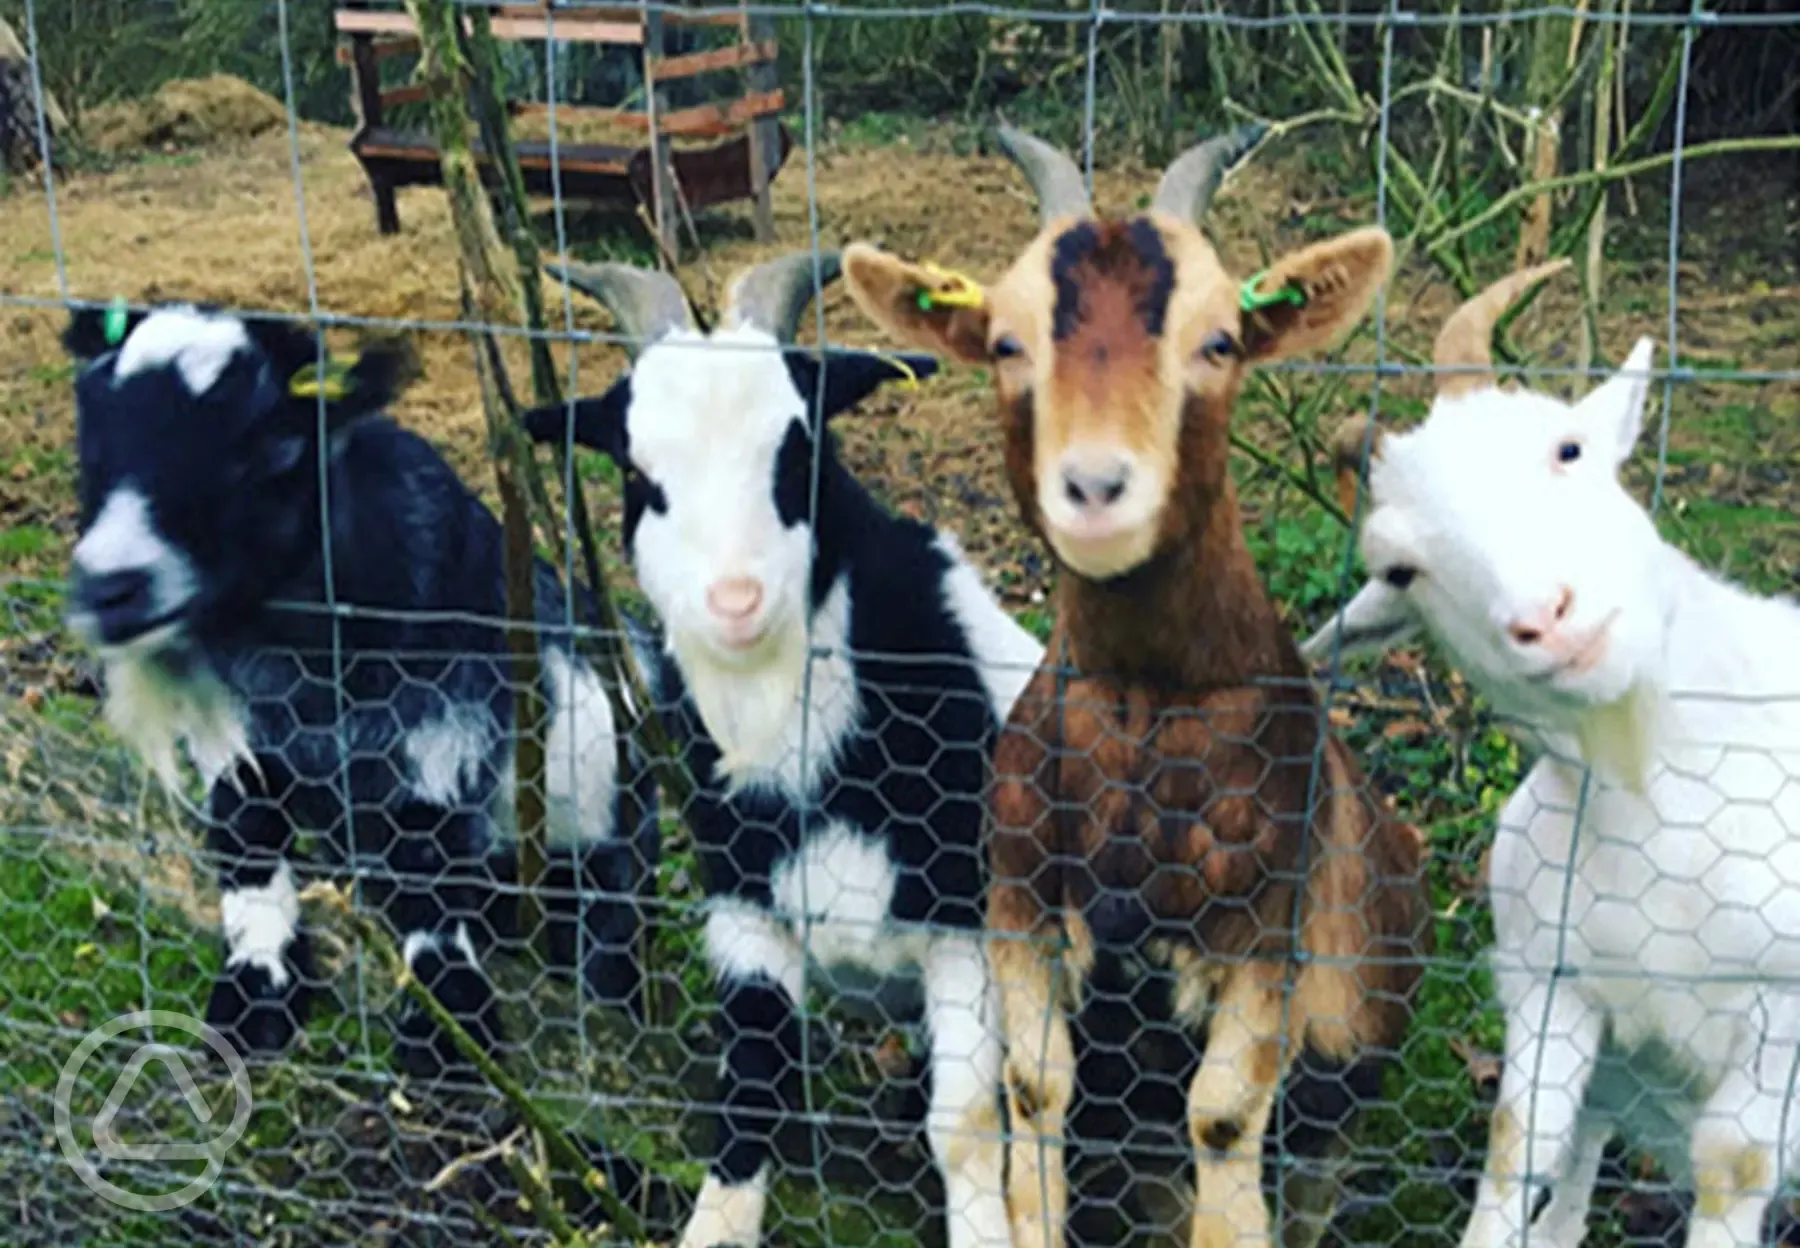 Meet the Pygmy Goats